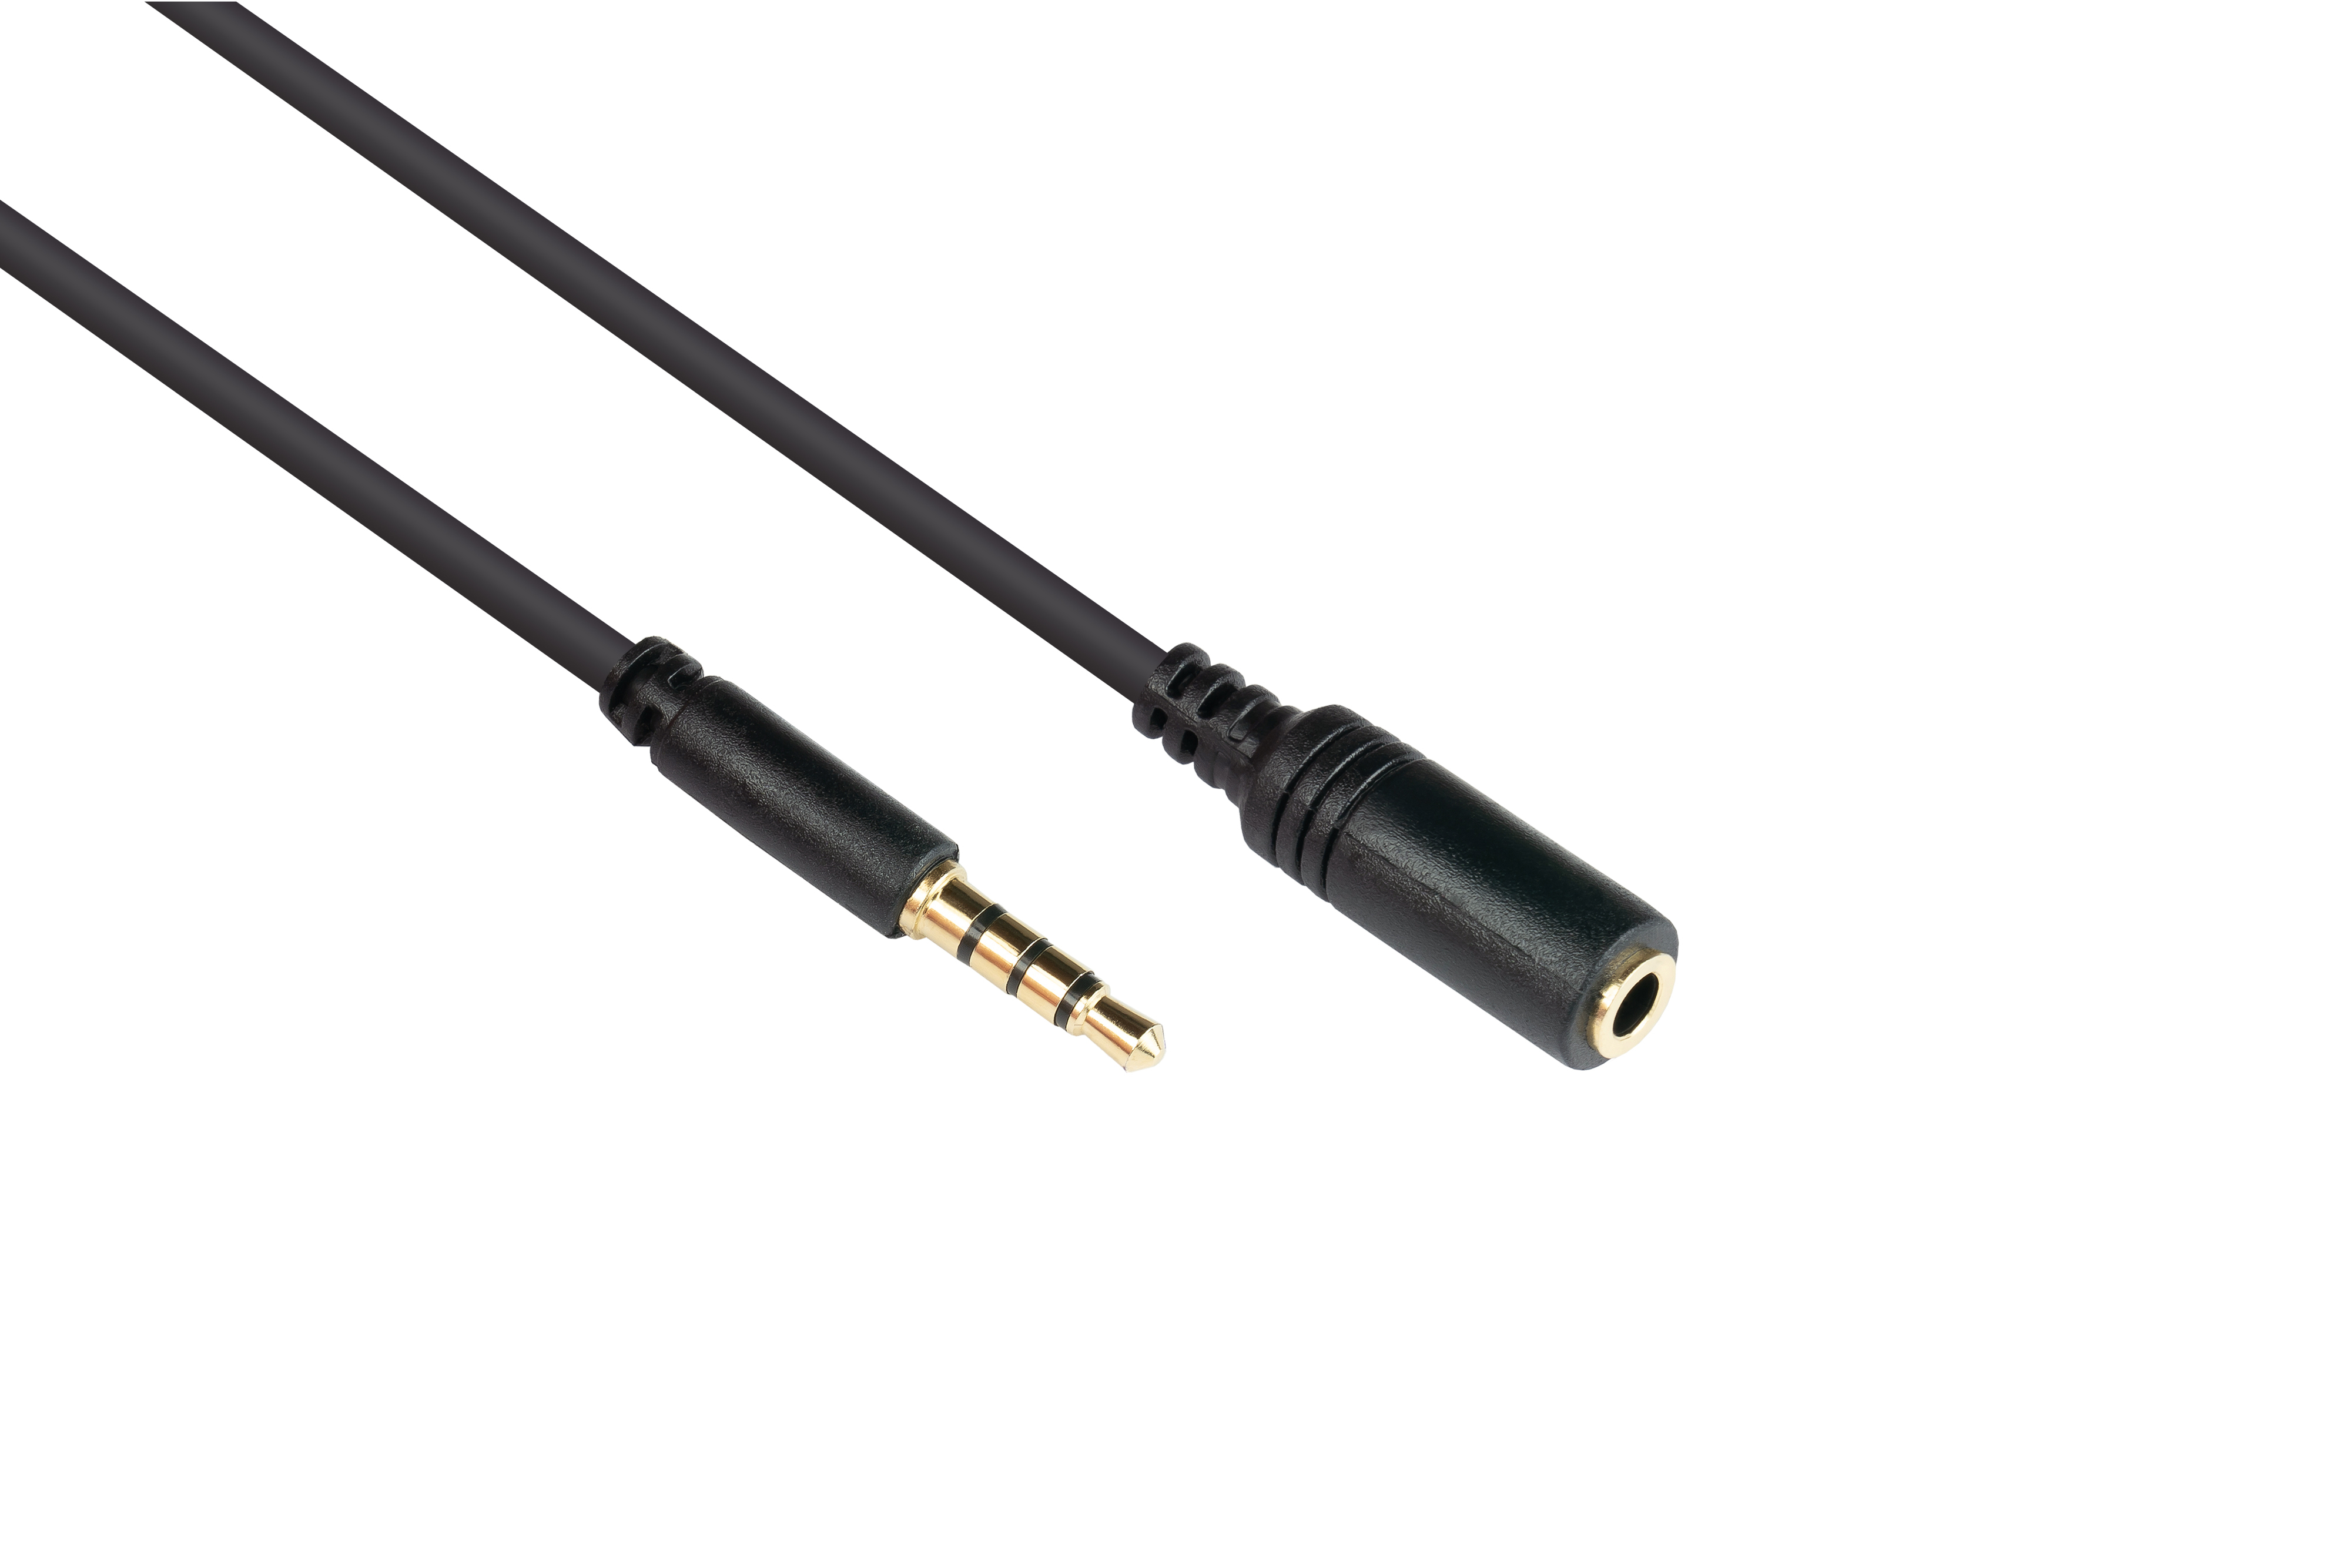 GOOD CONNECTIONS 3,5mm, schwarz CU, Klinkenverlängerung Stecker (4polig), Buchse Audio an Kontakte, vergoldete